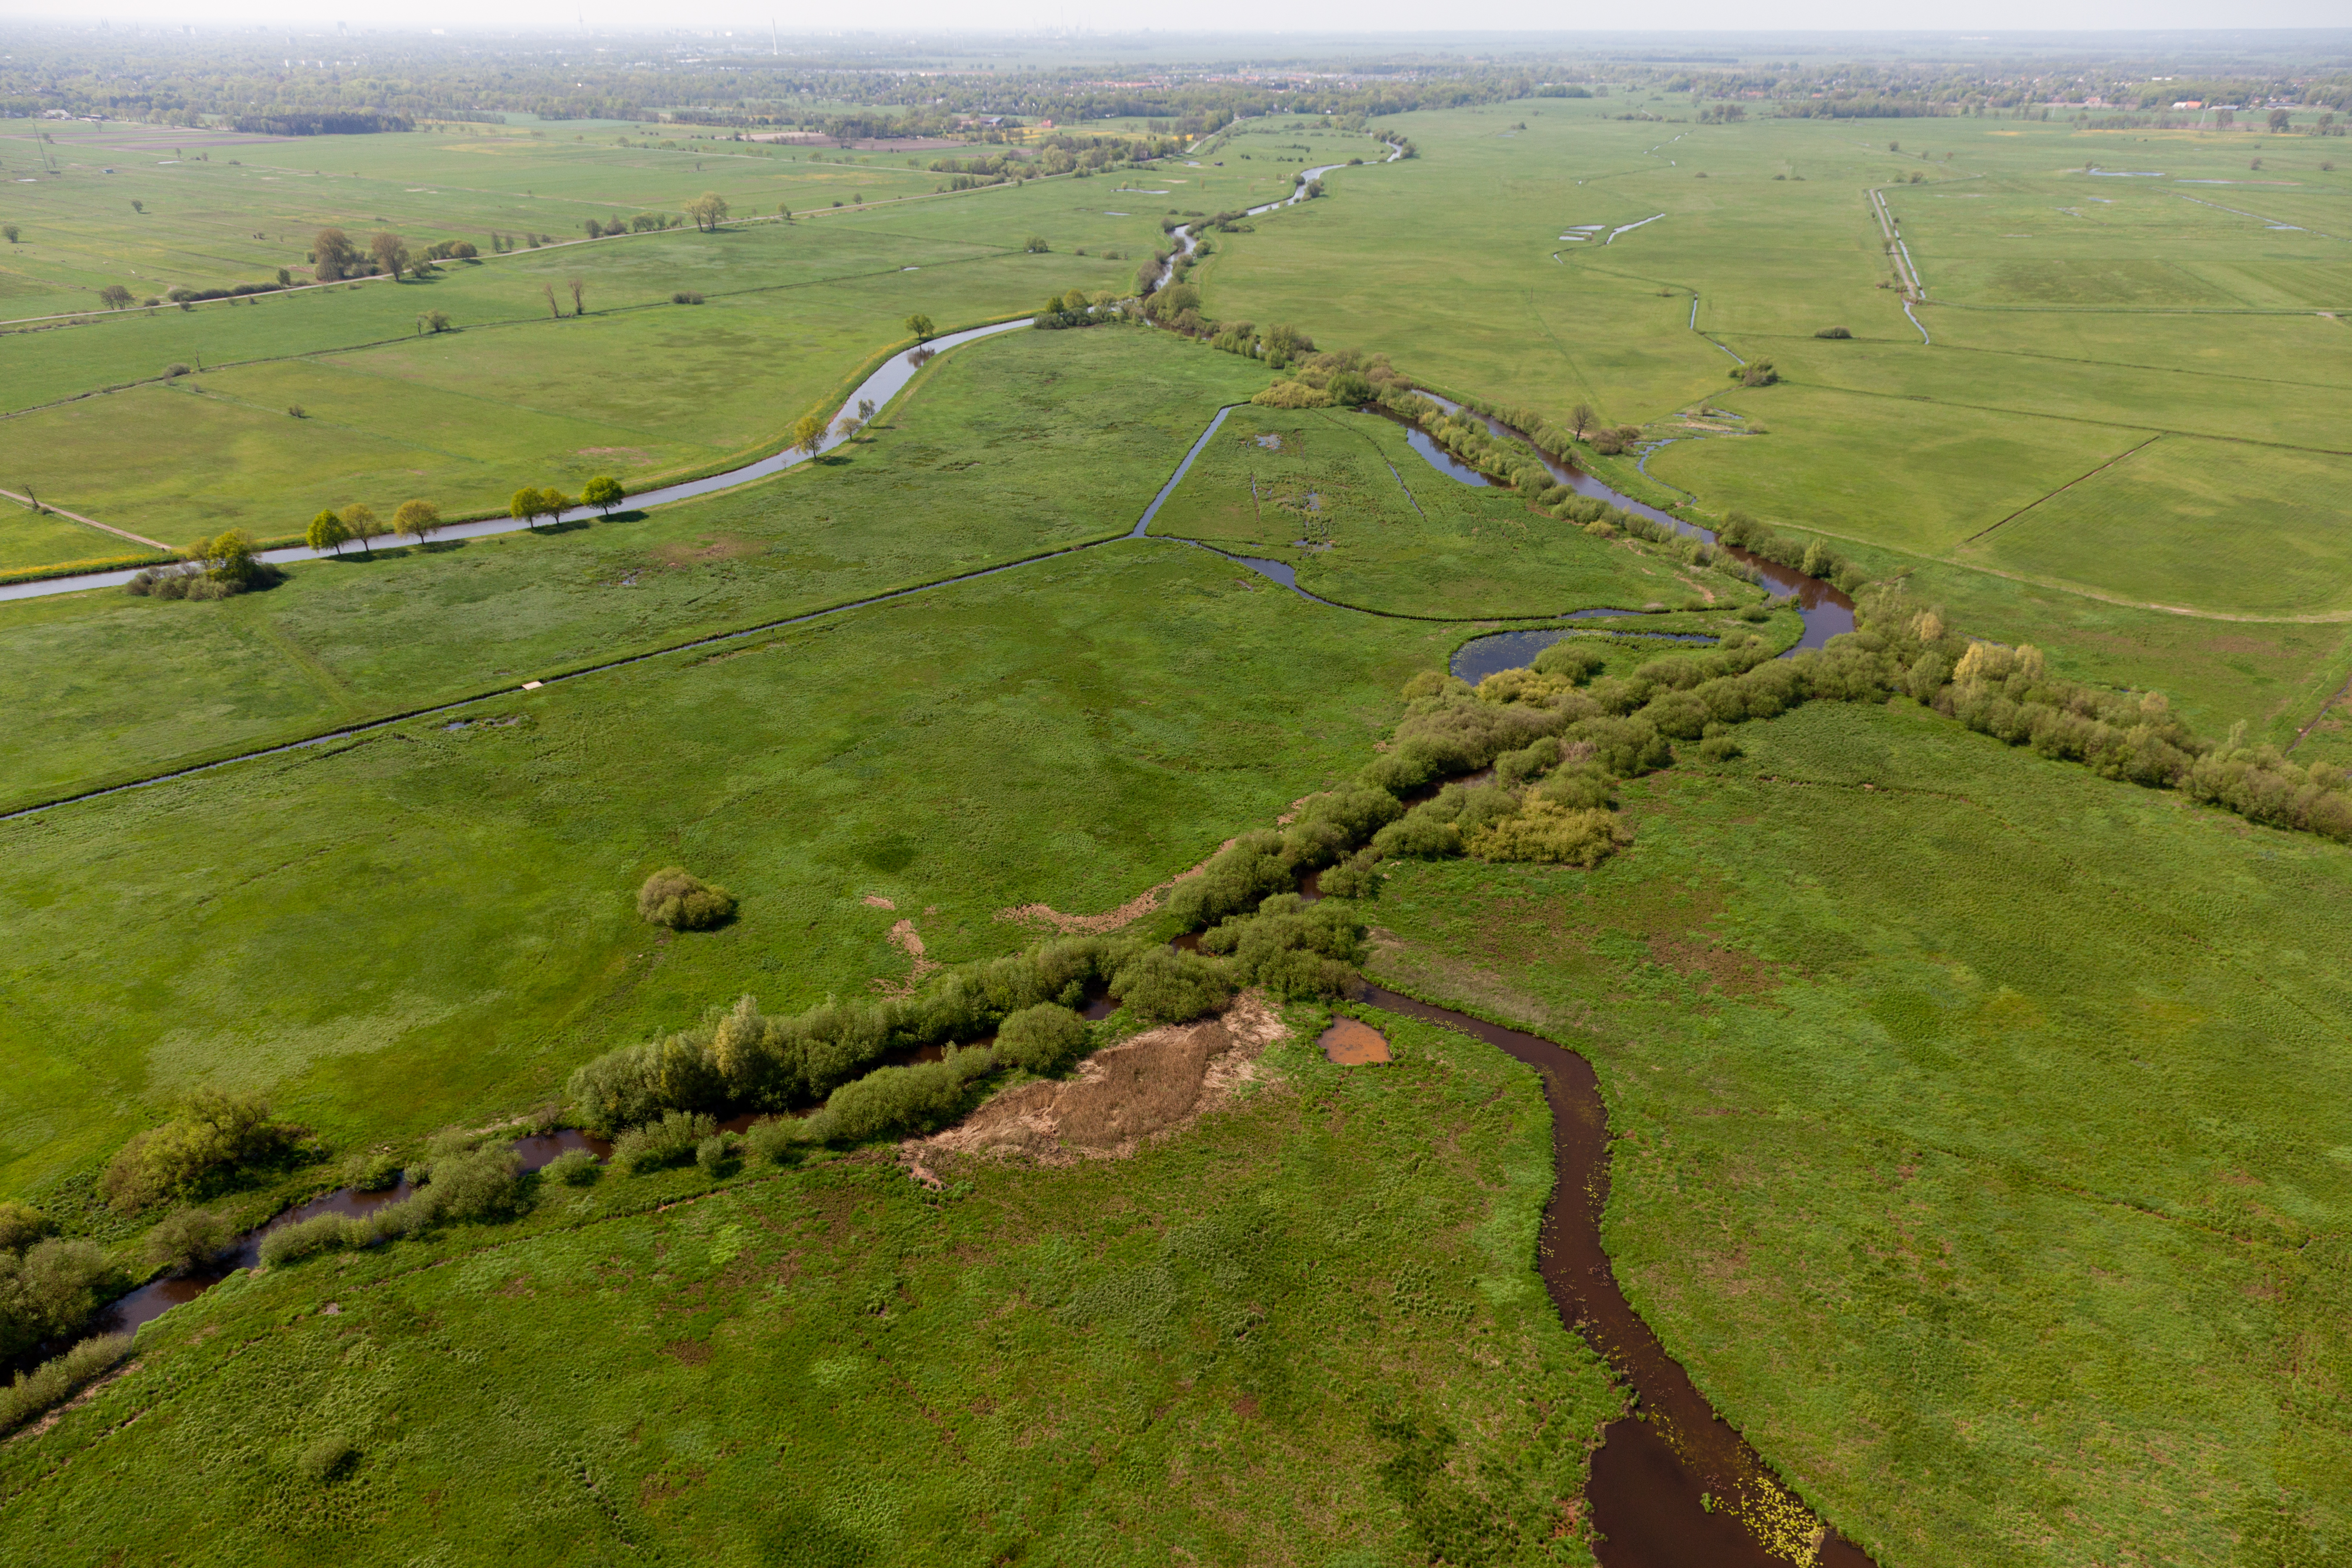 Luftbild des nassen Dreiecks an der Wümme mit Sträuchern und Bäumen im Uferbereich und umgebenden wiedervernässten Feuchtwiesen.